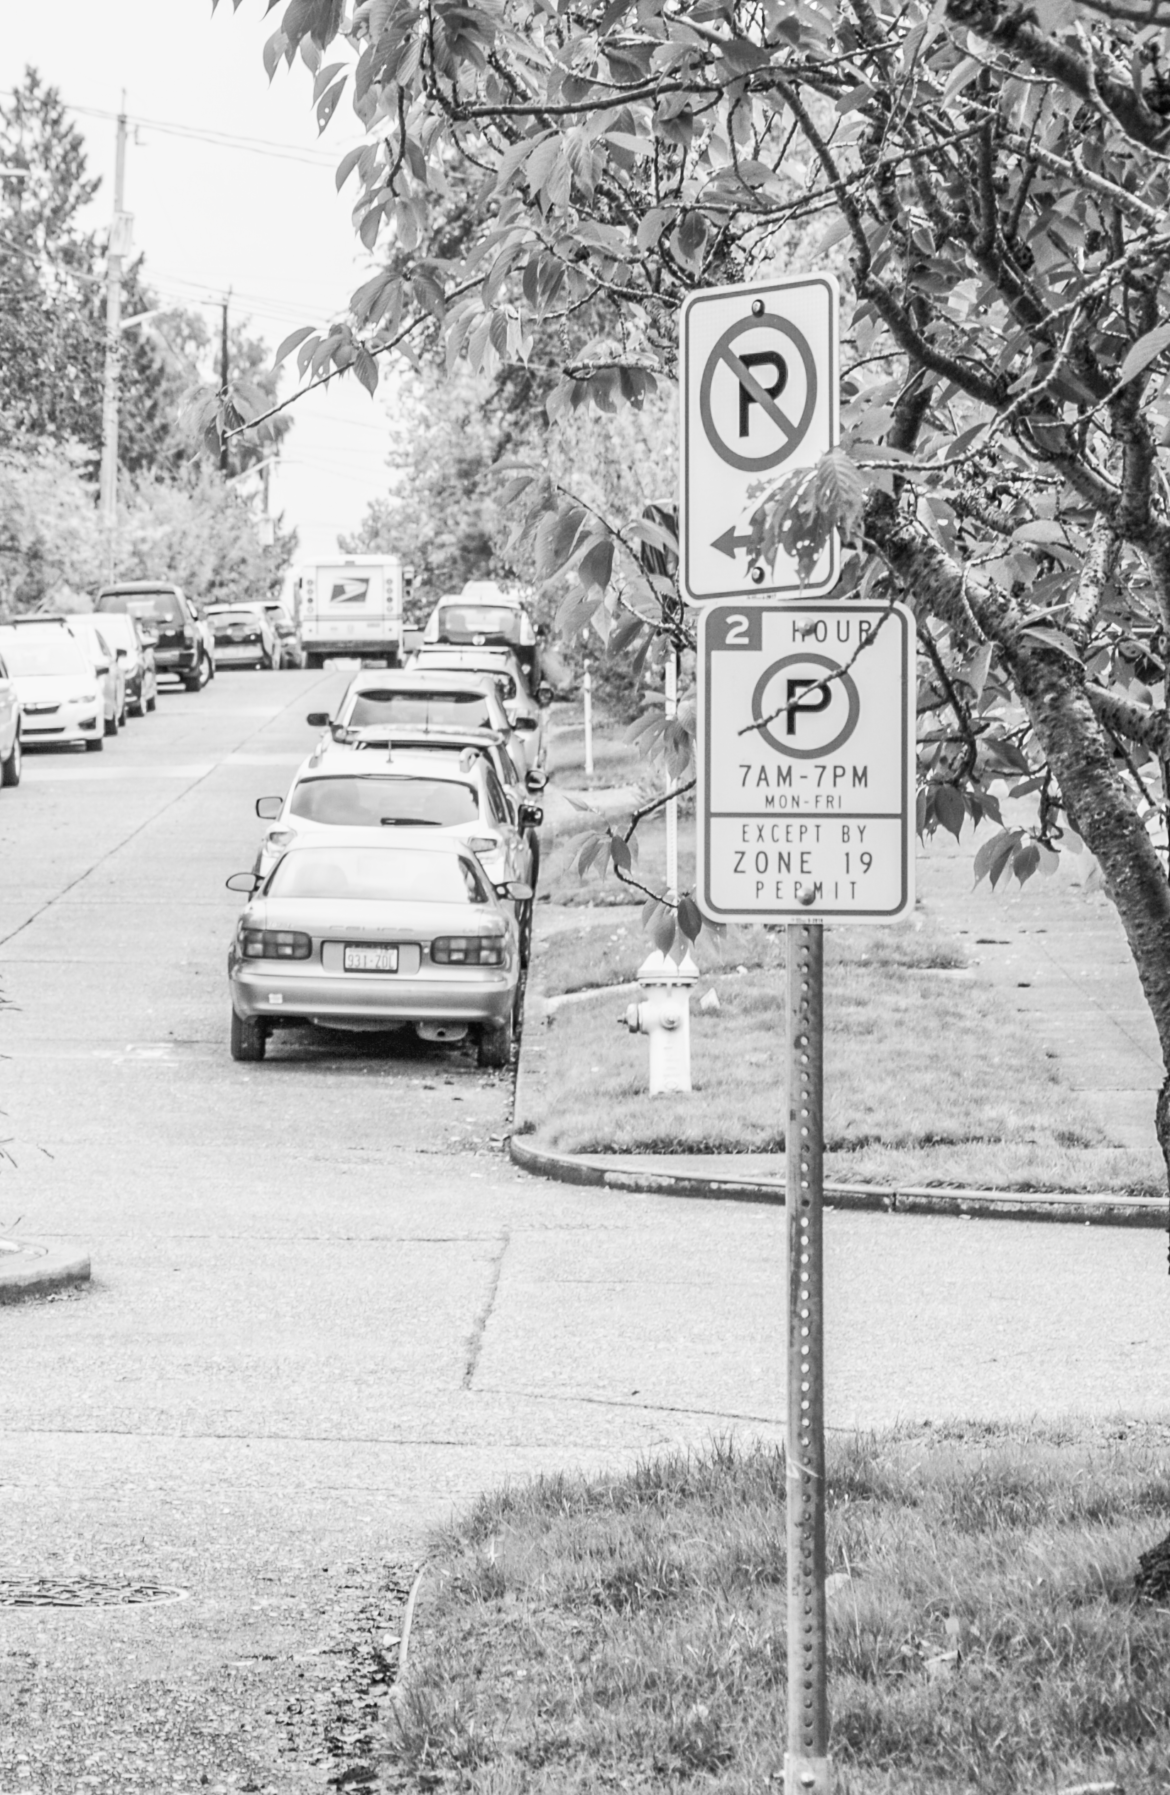 Roosevelt Student Drivers Struggle for Parking